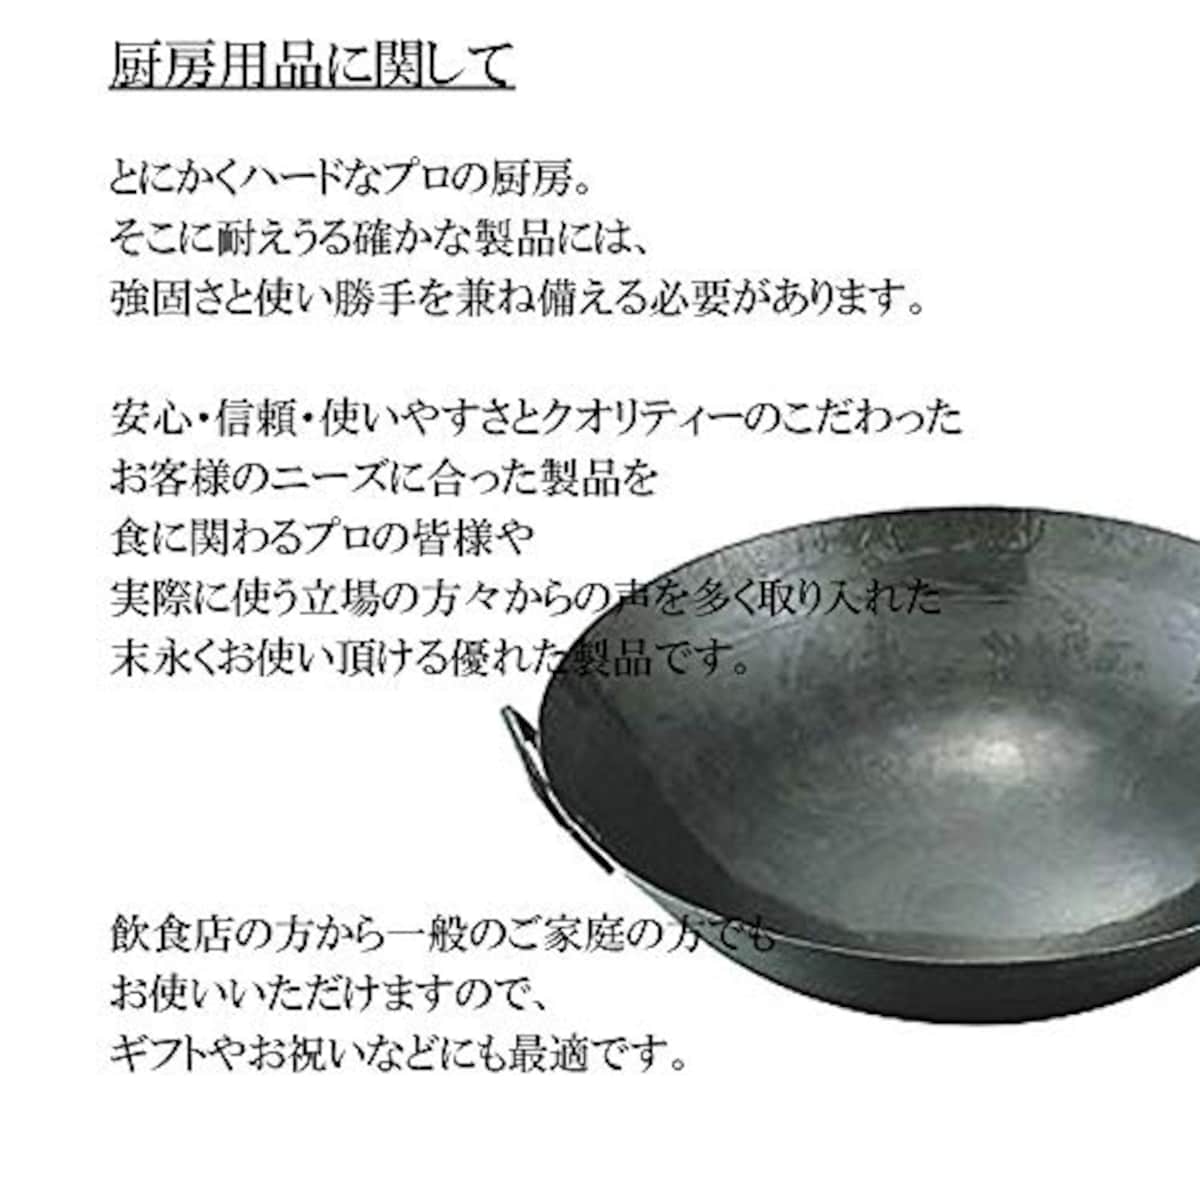  マイスタープレミアムフライパン 30cm [ 30cm 850g ] [ フライパン ] | 厨房 キッチン 台所 調理 業務用画像2 